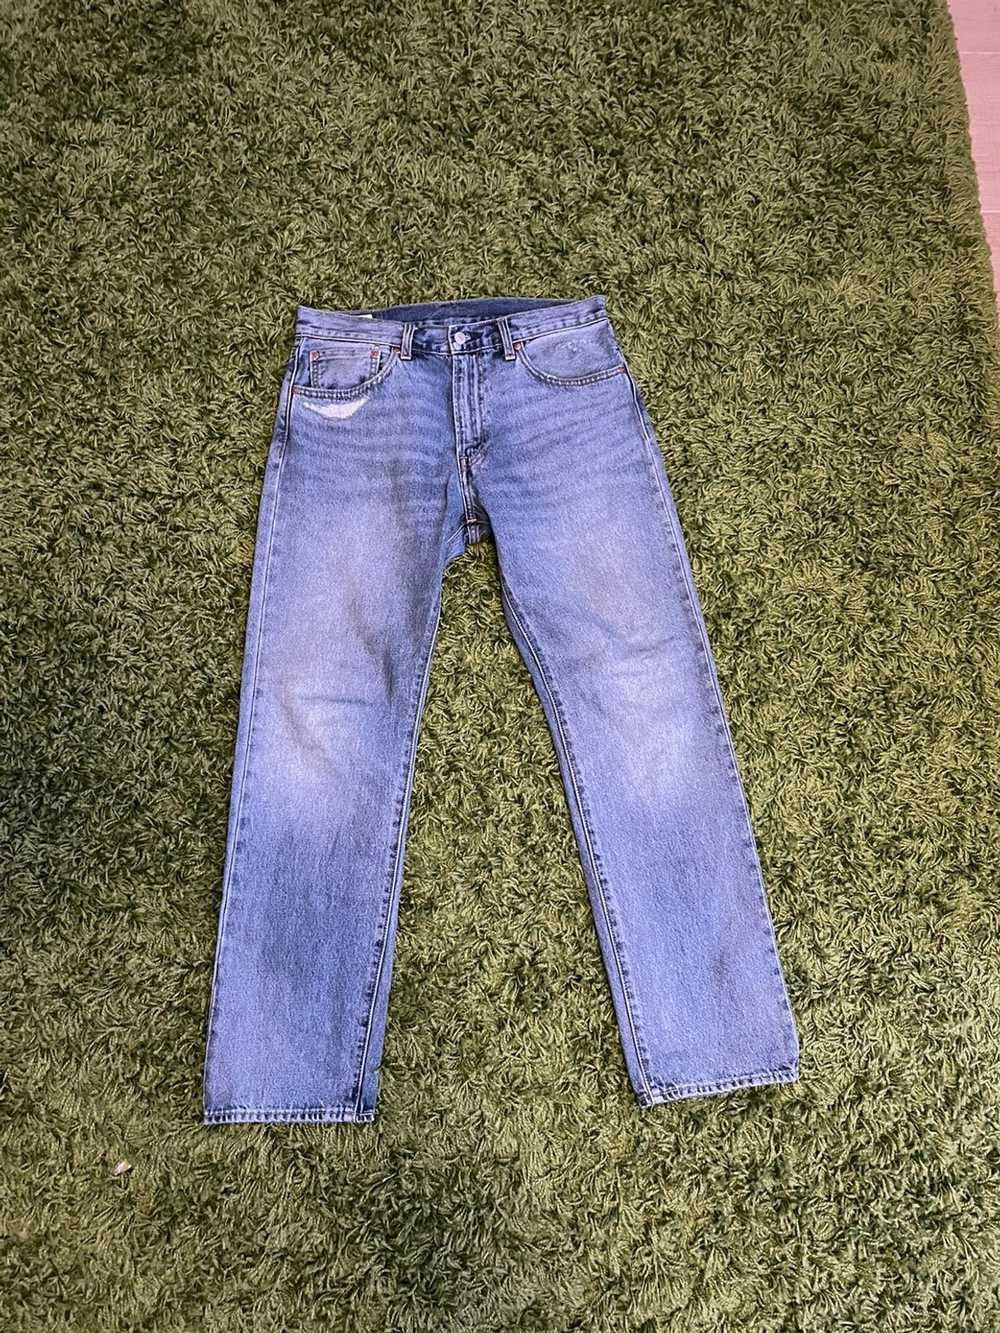 Levi's Vintage Levis 551 Jeans Selvedge Denim - image 1